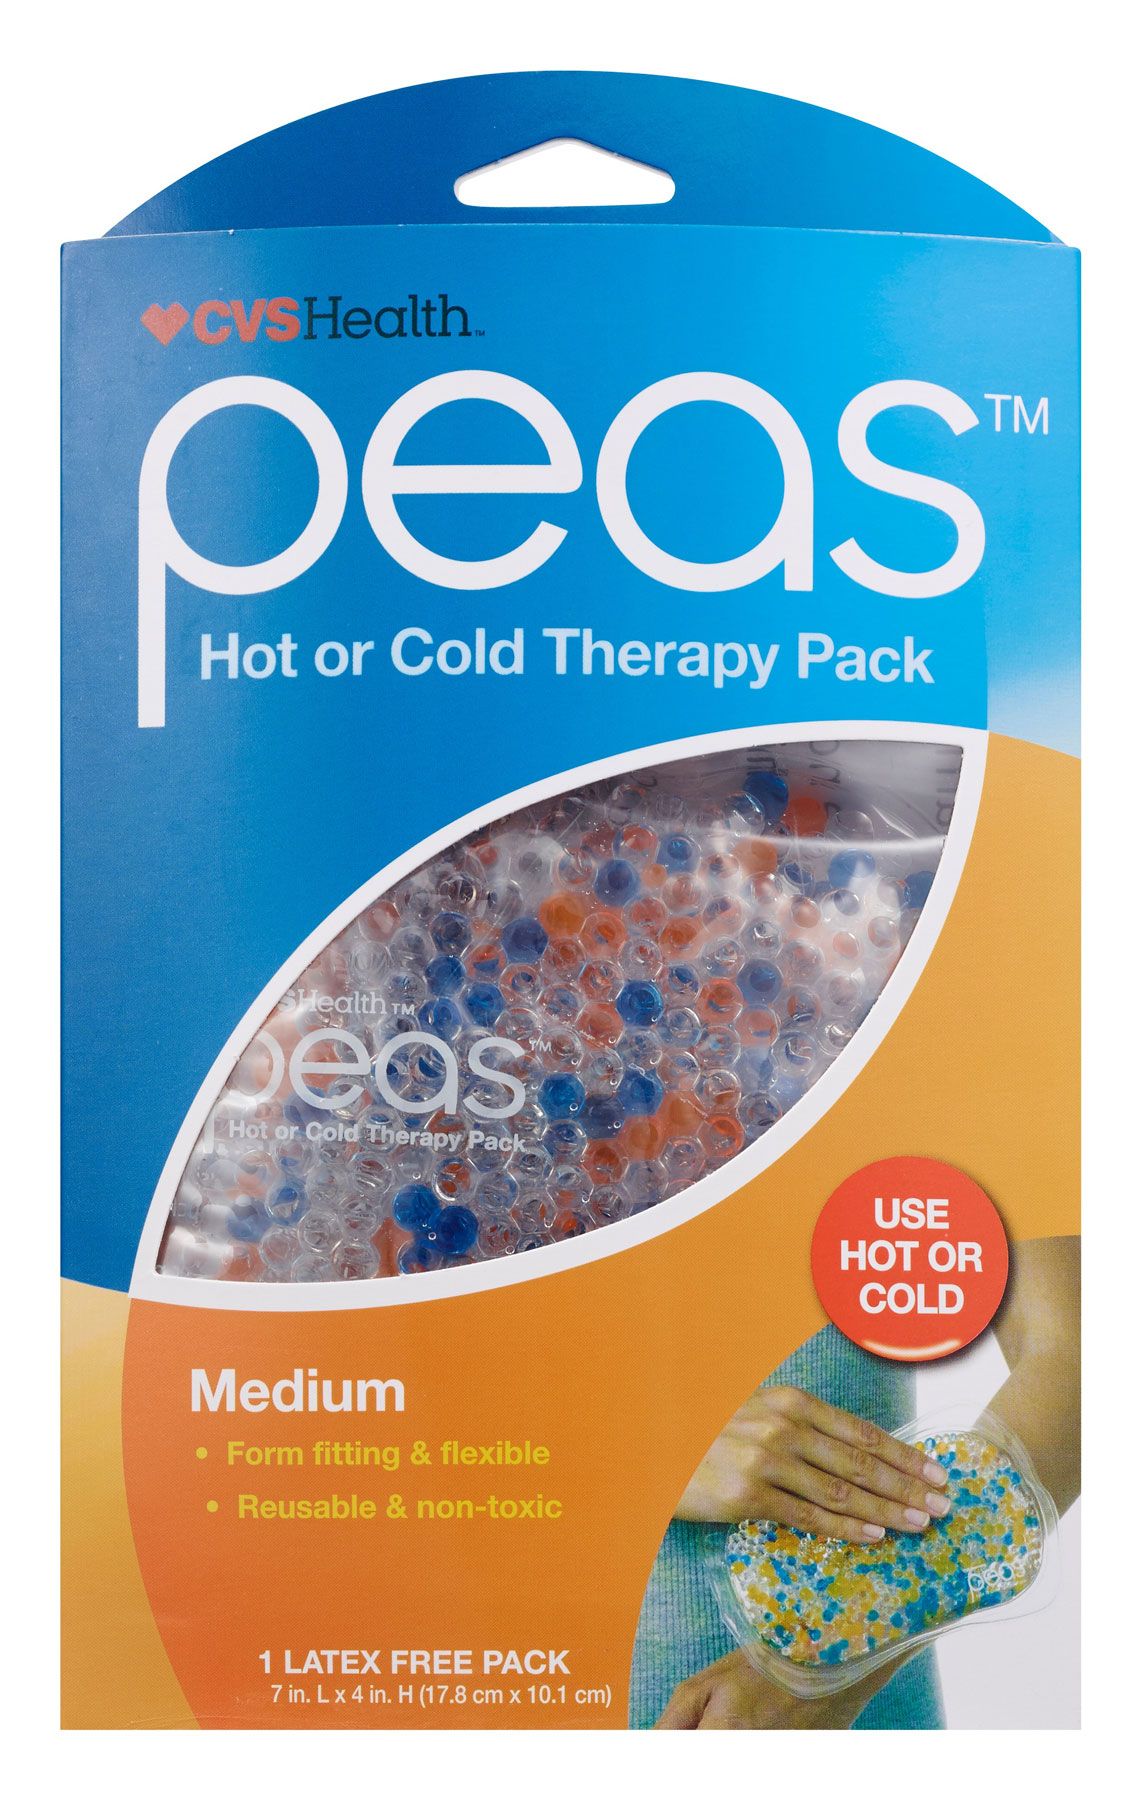 Подаръци за болни или ранени и идеи за карантинни подаръци - CVS Health Peas Hot or Cold Therapy Pack